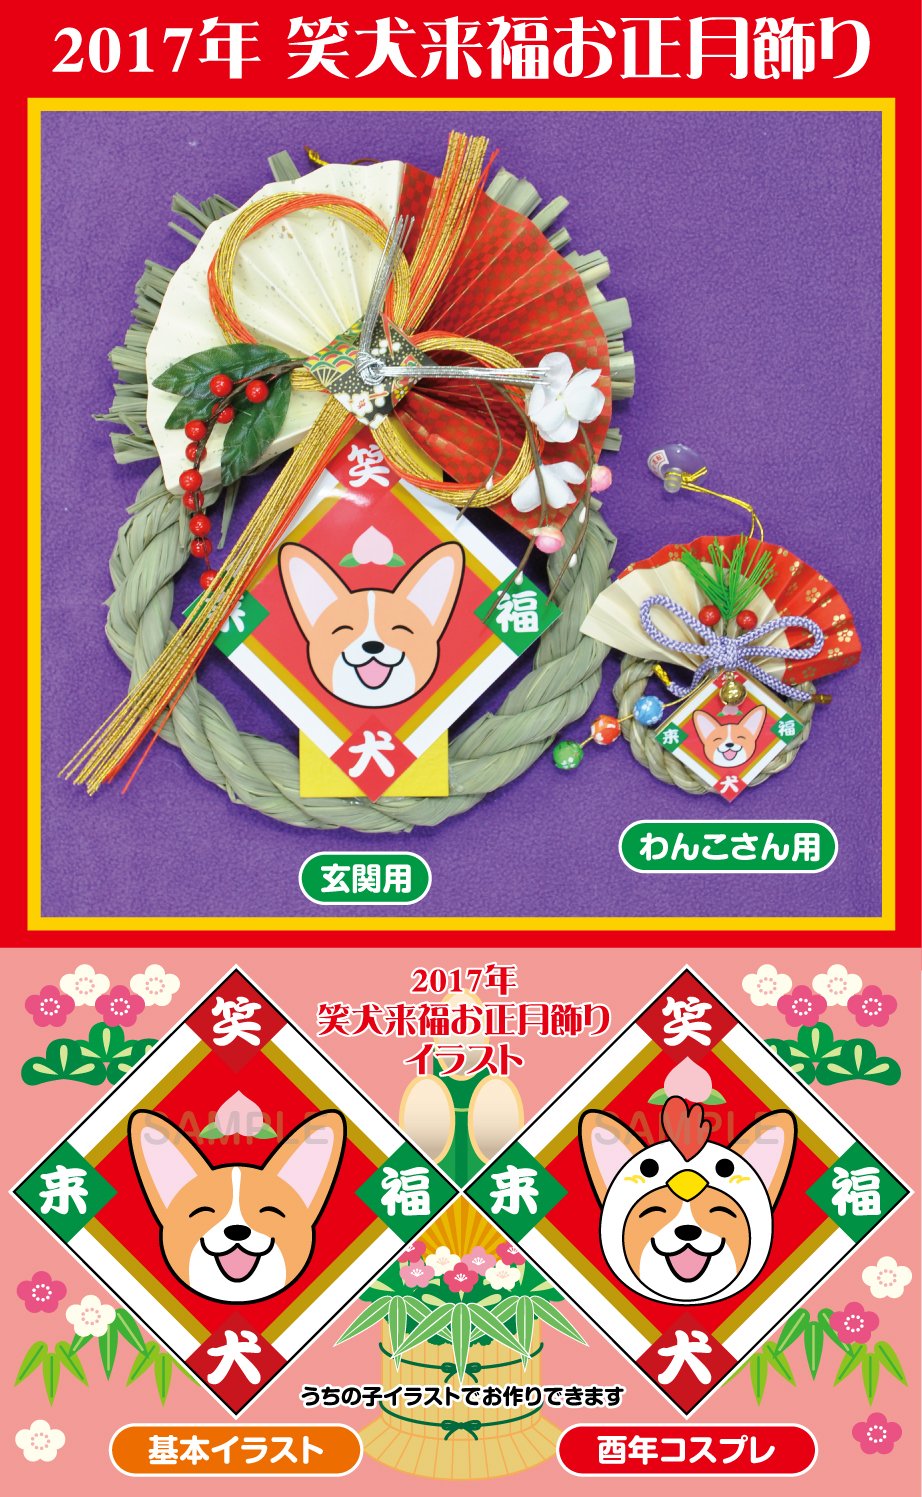 تويتر ぺへさぽデザイン على تويتر 17年 笑犬来福お正月飾りのデザインが決定しました 17年酉年はこのお飾りになります イラストは基本イラストか 酉年コスプレをお選びいただけます どちらもうちの子イラストにできますので ご希望の場合はお写真をお送り